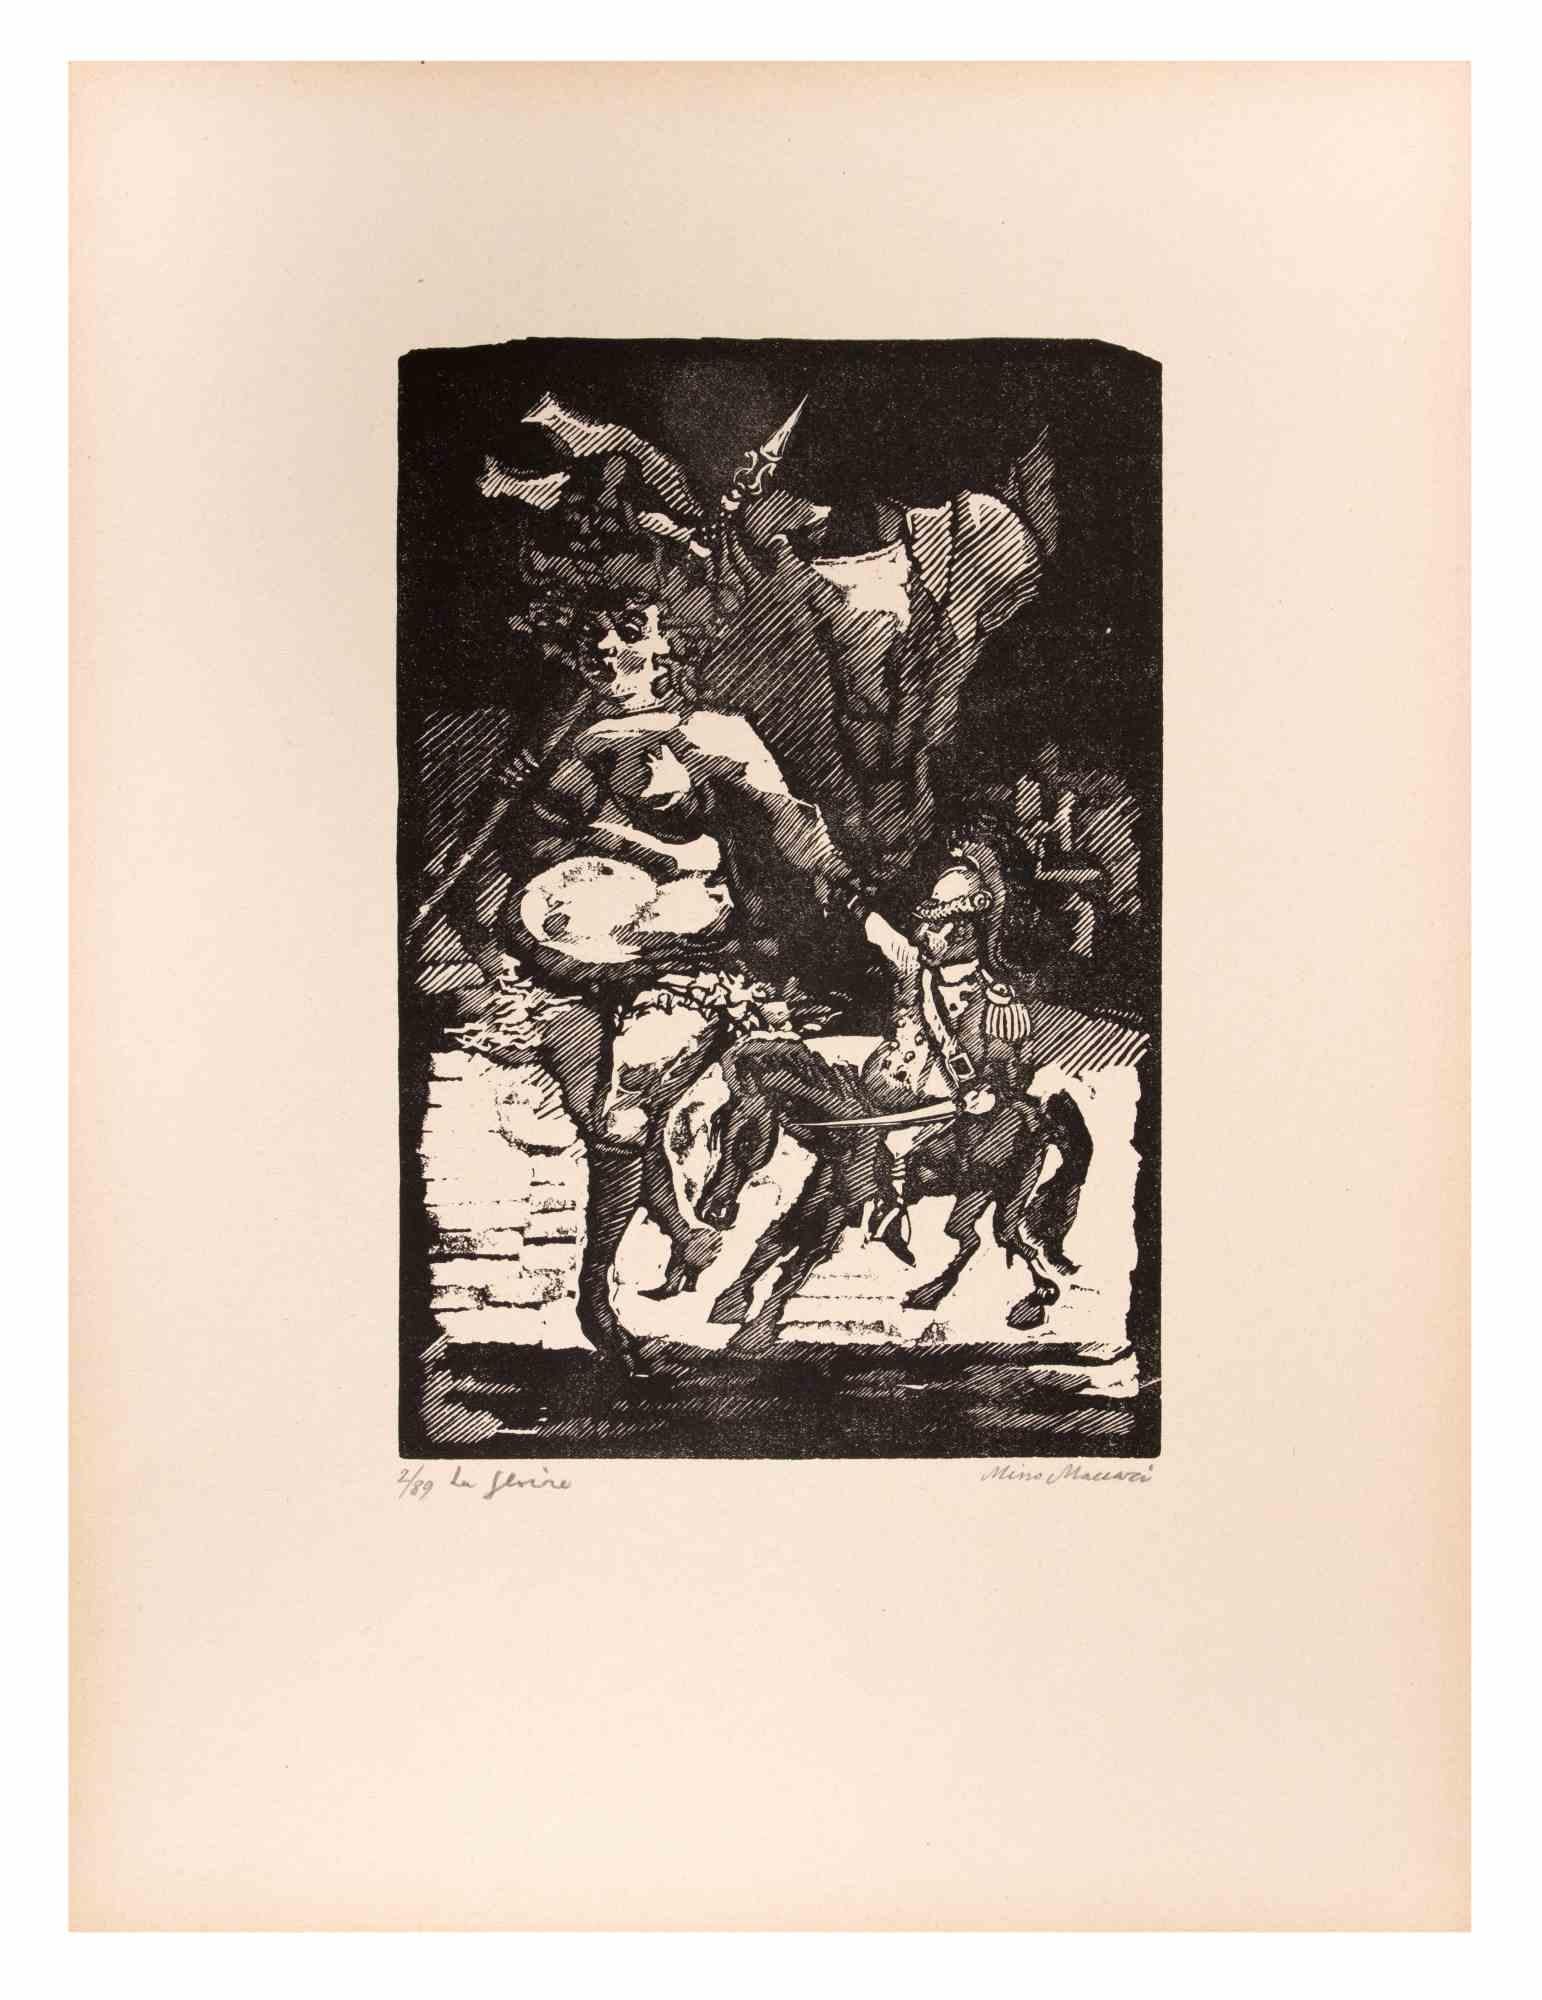 Der Ruhm ist ein Kunstwerk von Mino Maccari (1924-1989) aus der Mitte des 20. Jahrhunderts.

B./W. Holzschnitt auf Papier. Unten handsigniert, nummeriert 2/89 Exemplare und am linken Rand betitelt.

Gute Bedingungen.

Mino Maccari (Siena, 1924-Rom,